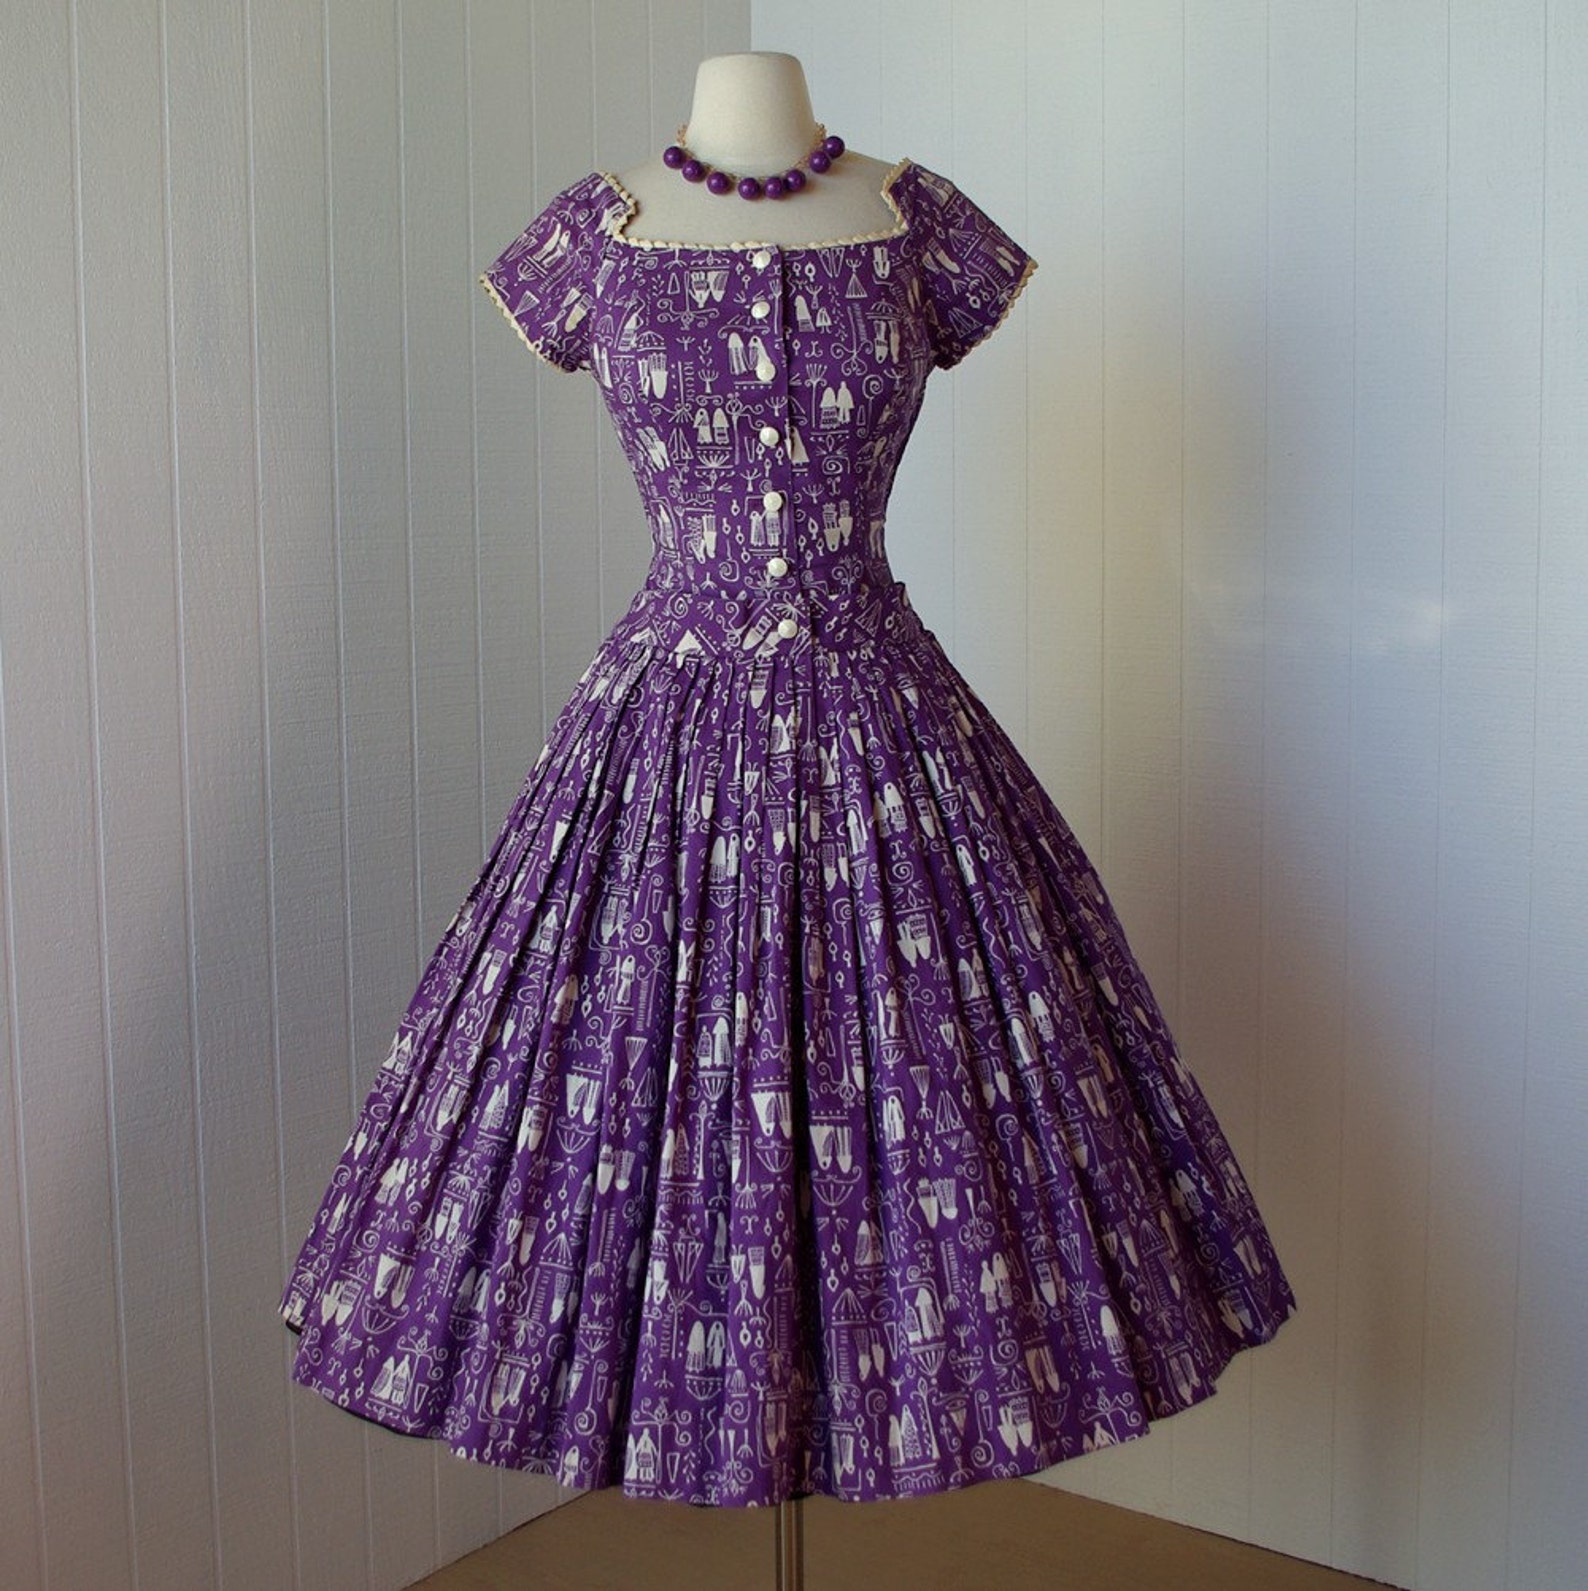 Купить платье 50 платьев. Платье Винтаж 50е. Платья 50-х годов. Платья 1950-х годов. Платье в стиле 50-х годов.